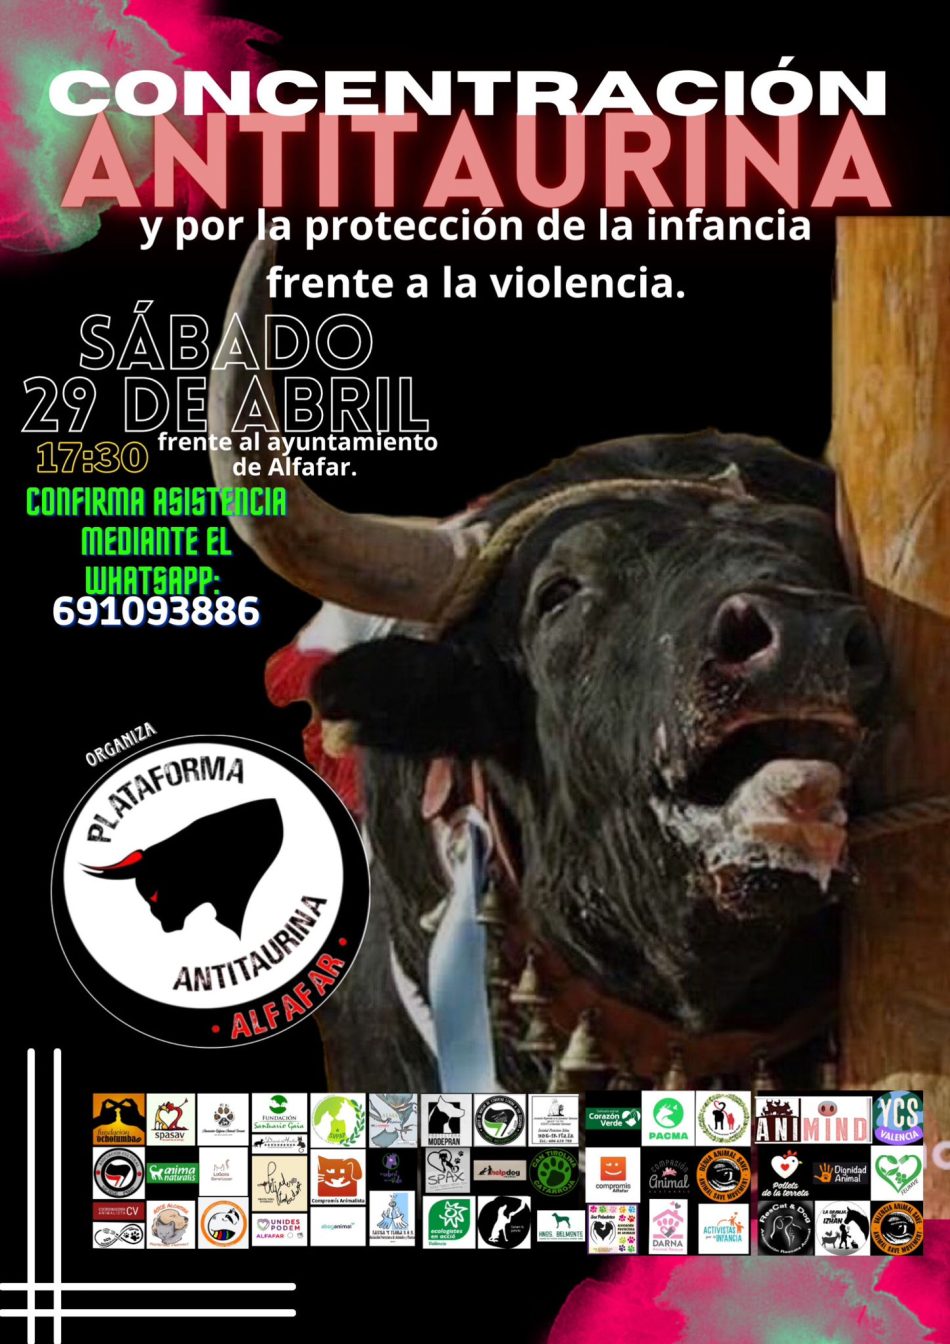 Concentración antitaurina y para proteger a la infancia el sábado frente al ayuntamiento de Alfafar (Valencia)